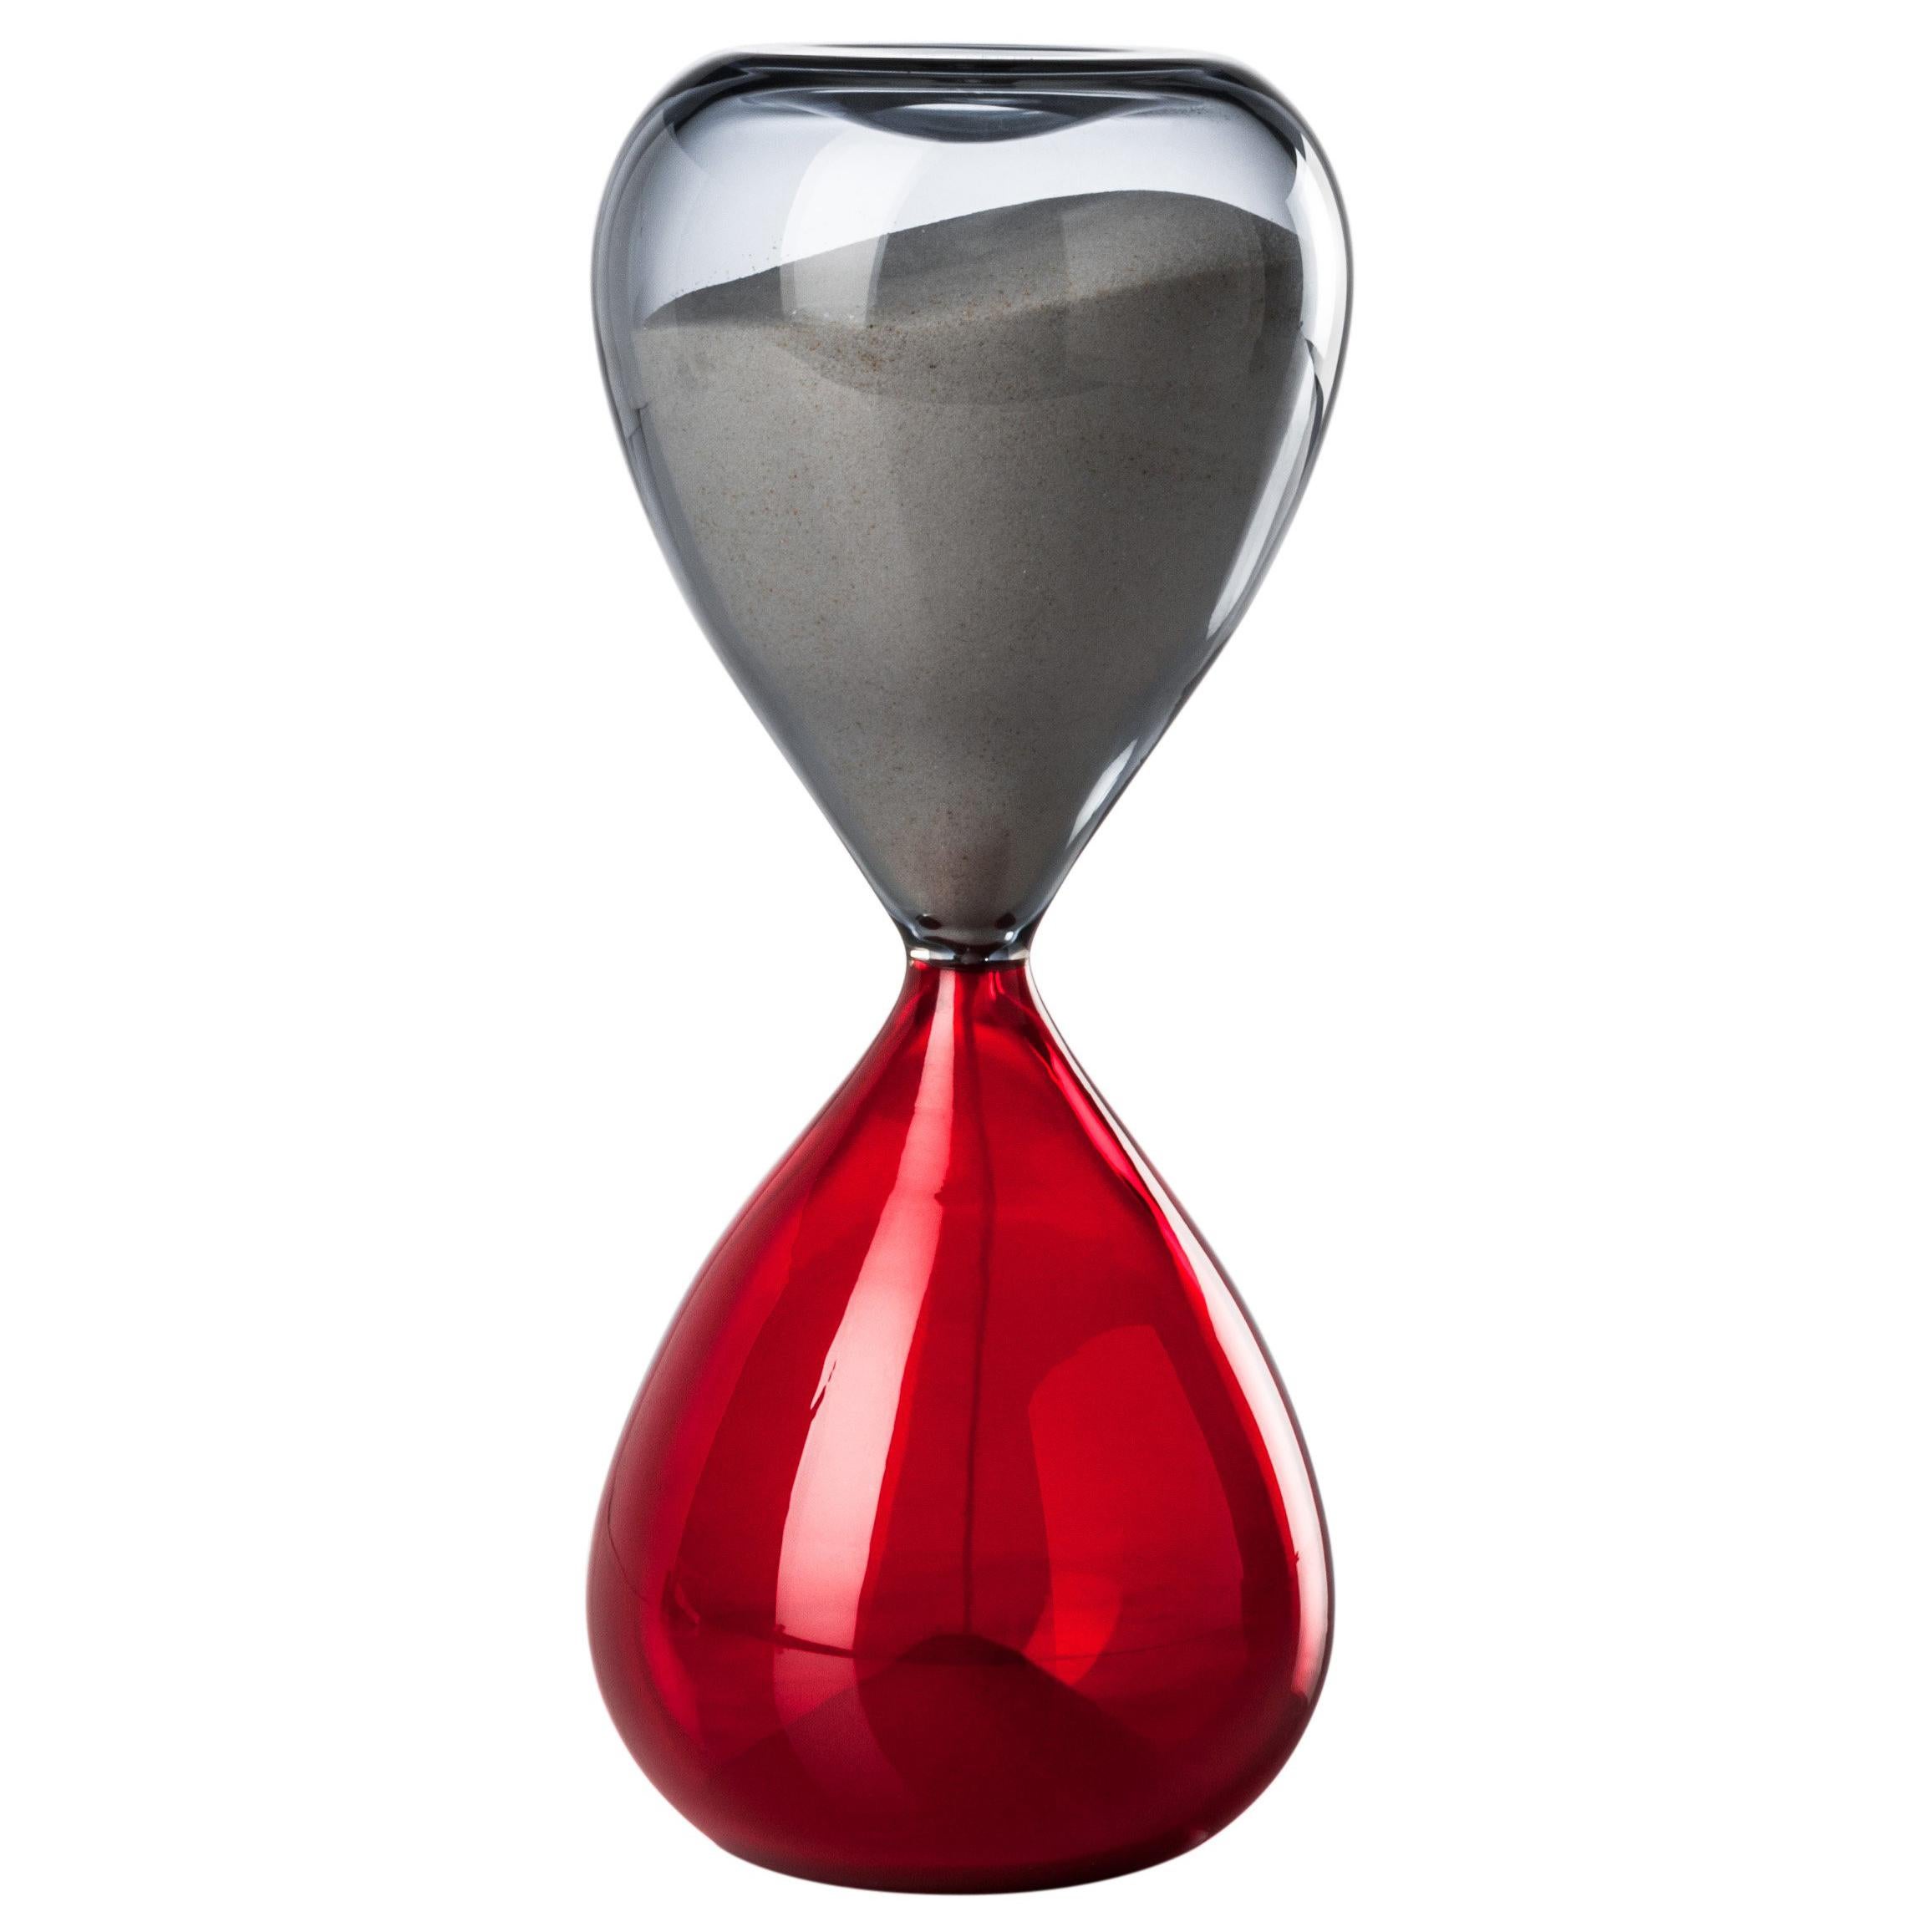 Lunette d'horloge Clessidra en verre gris et rouge de Venini